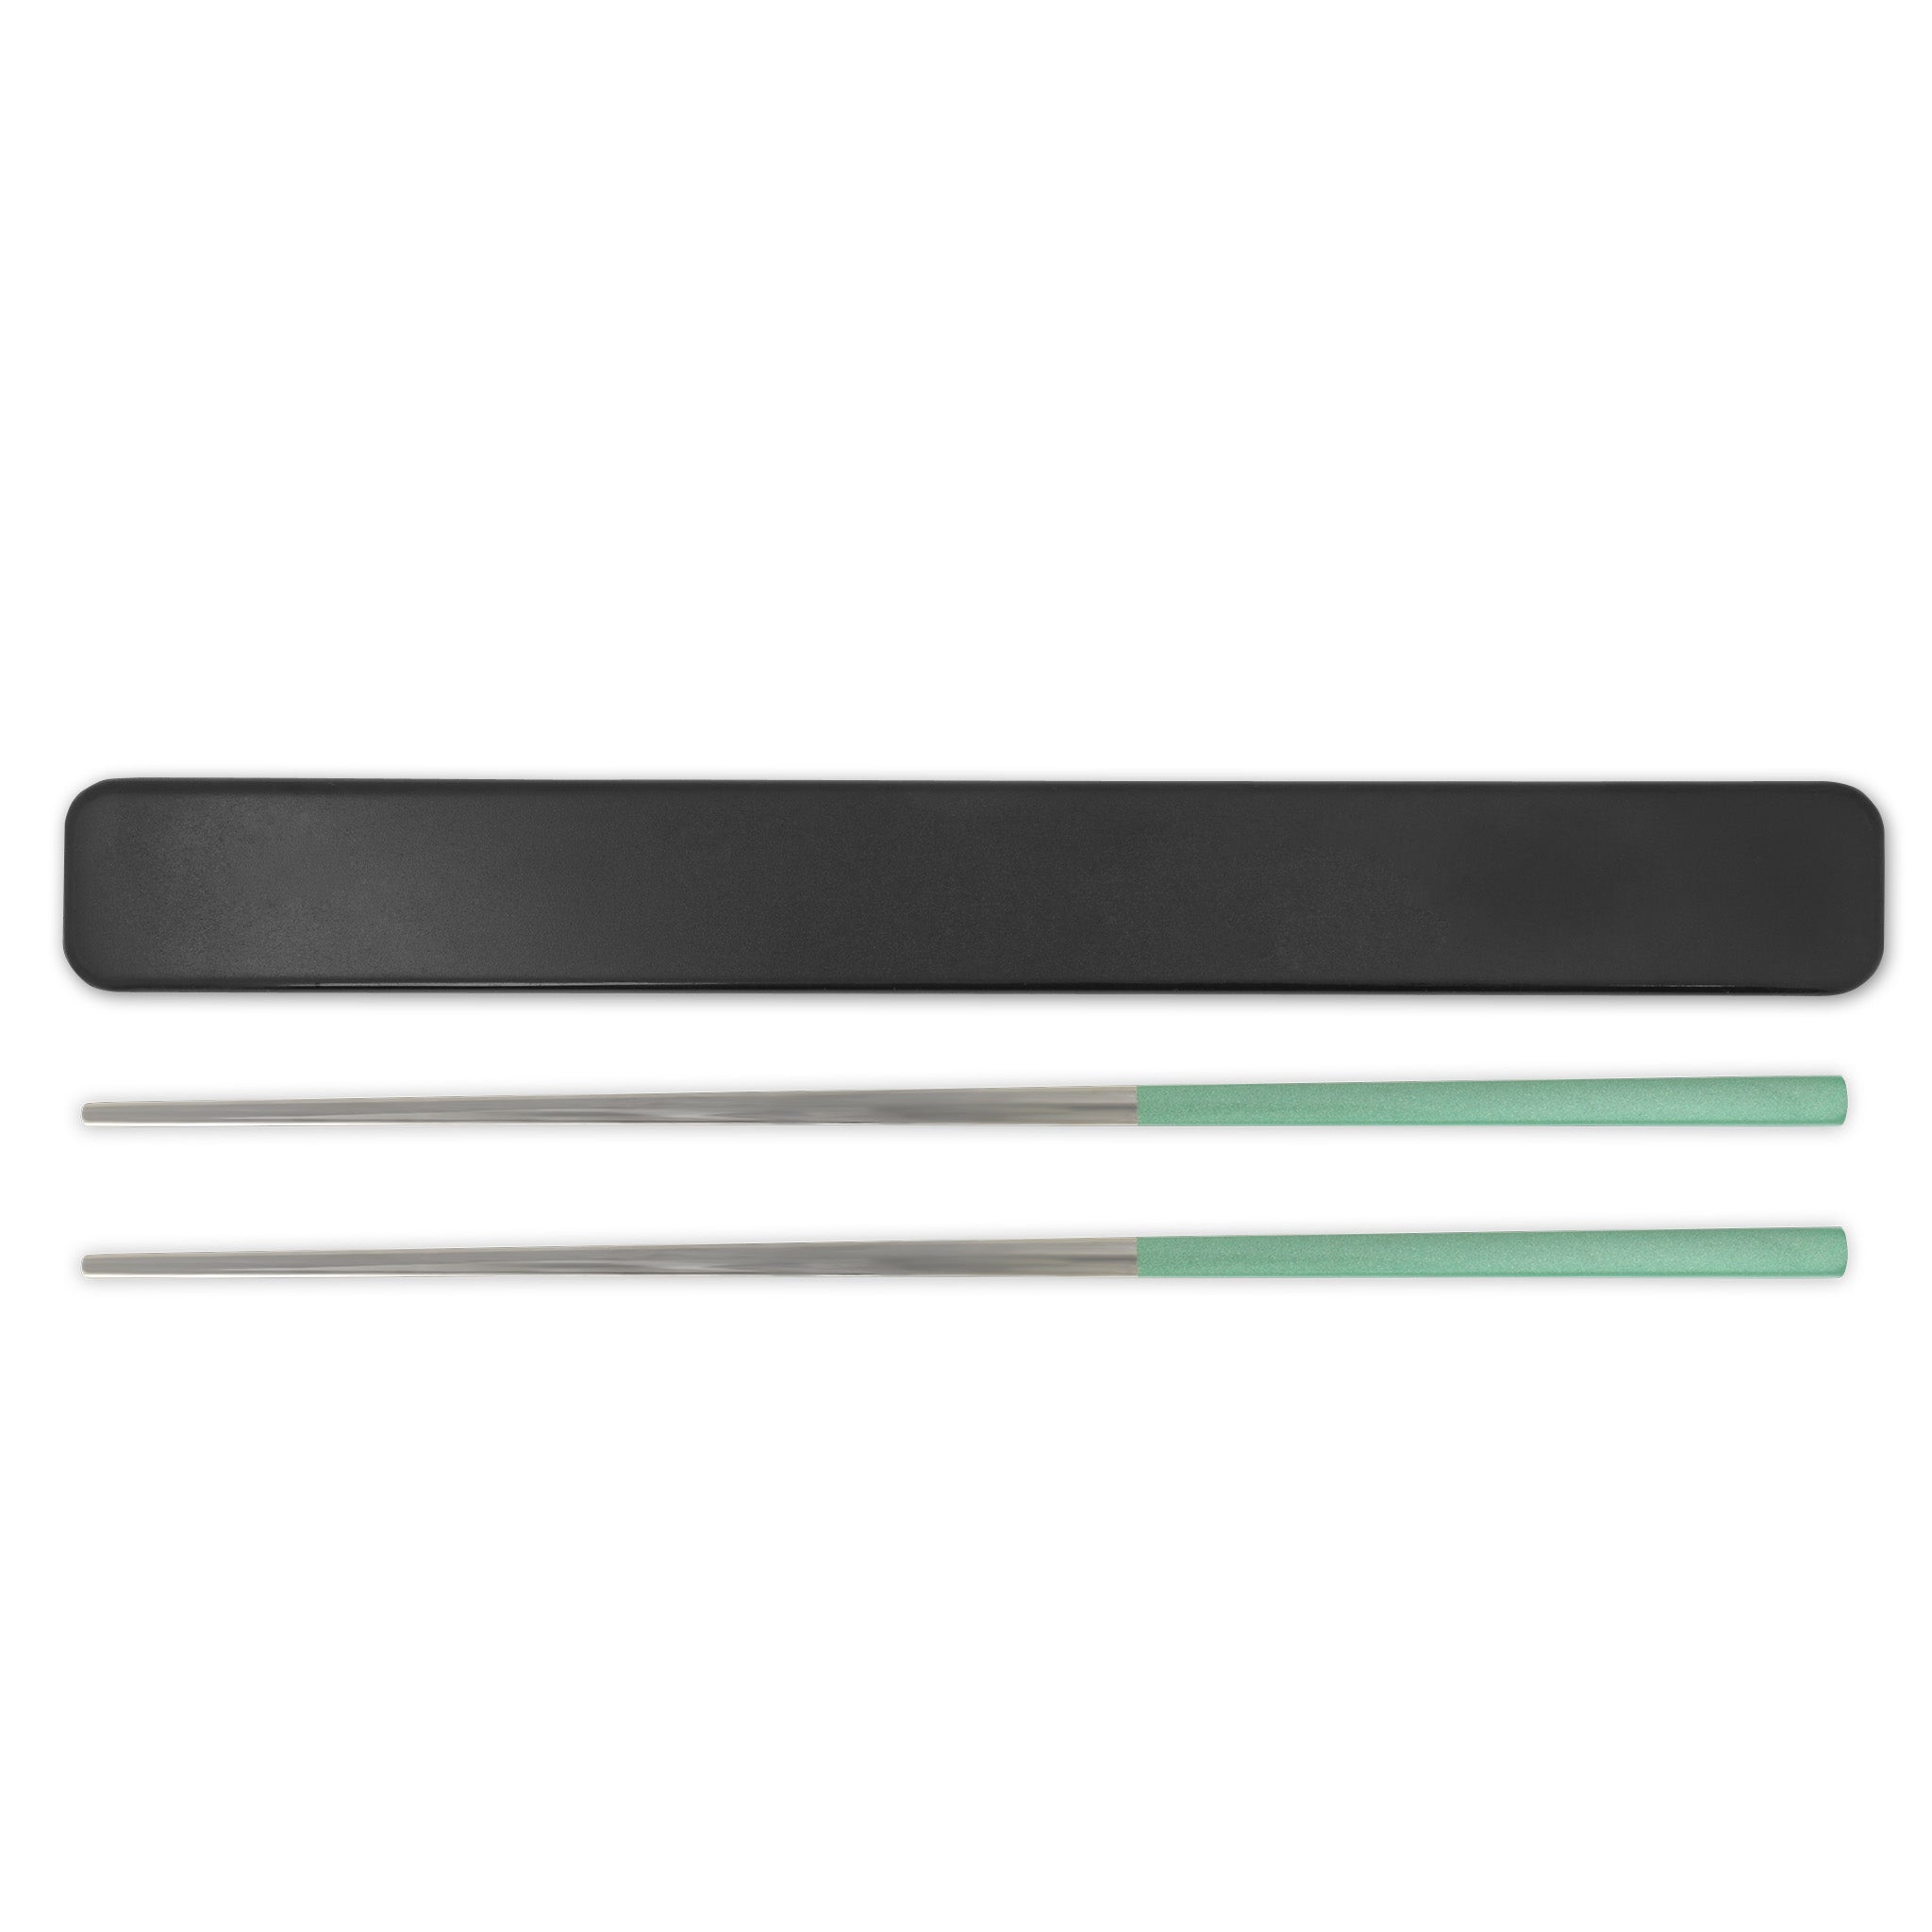 Stainless Steel Reusable Chopsticks Set (Mint Green / Silver)